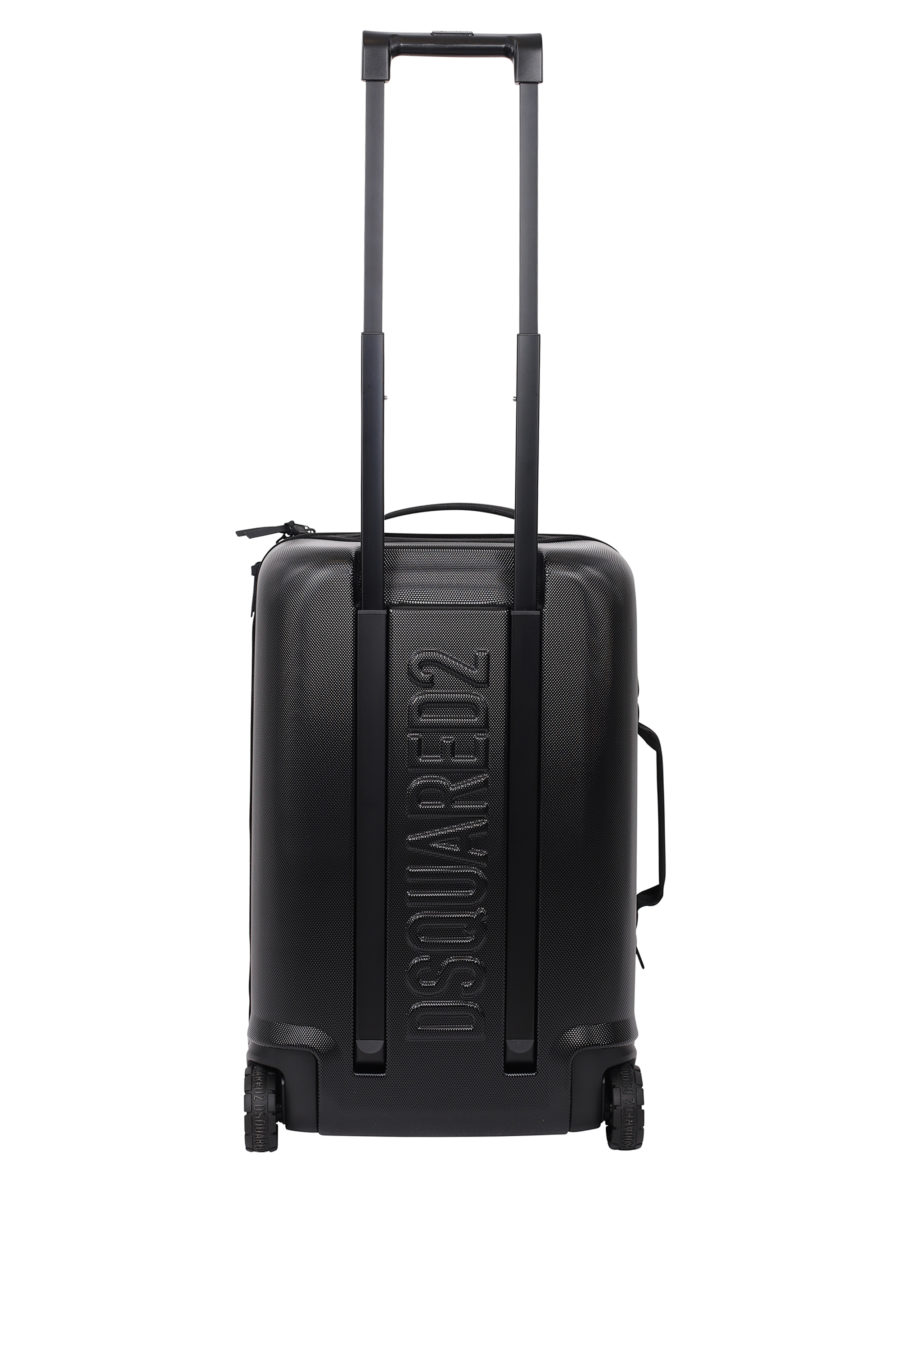 Black wheeled suitcase with "icon" logo - IMG 9702